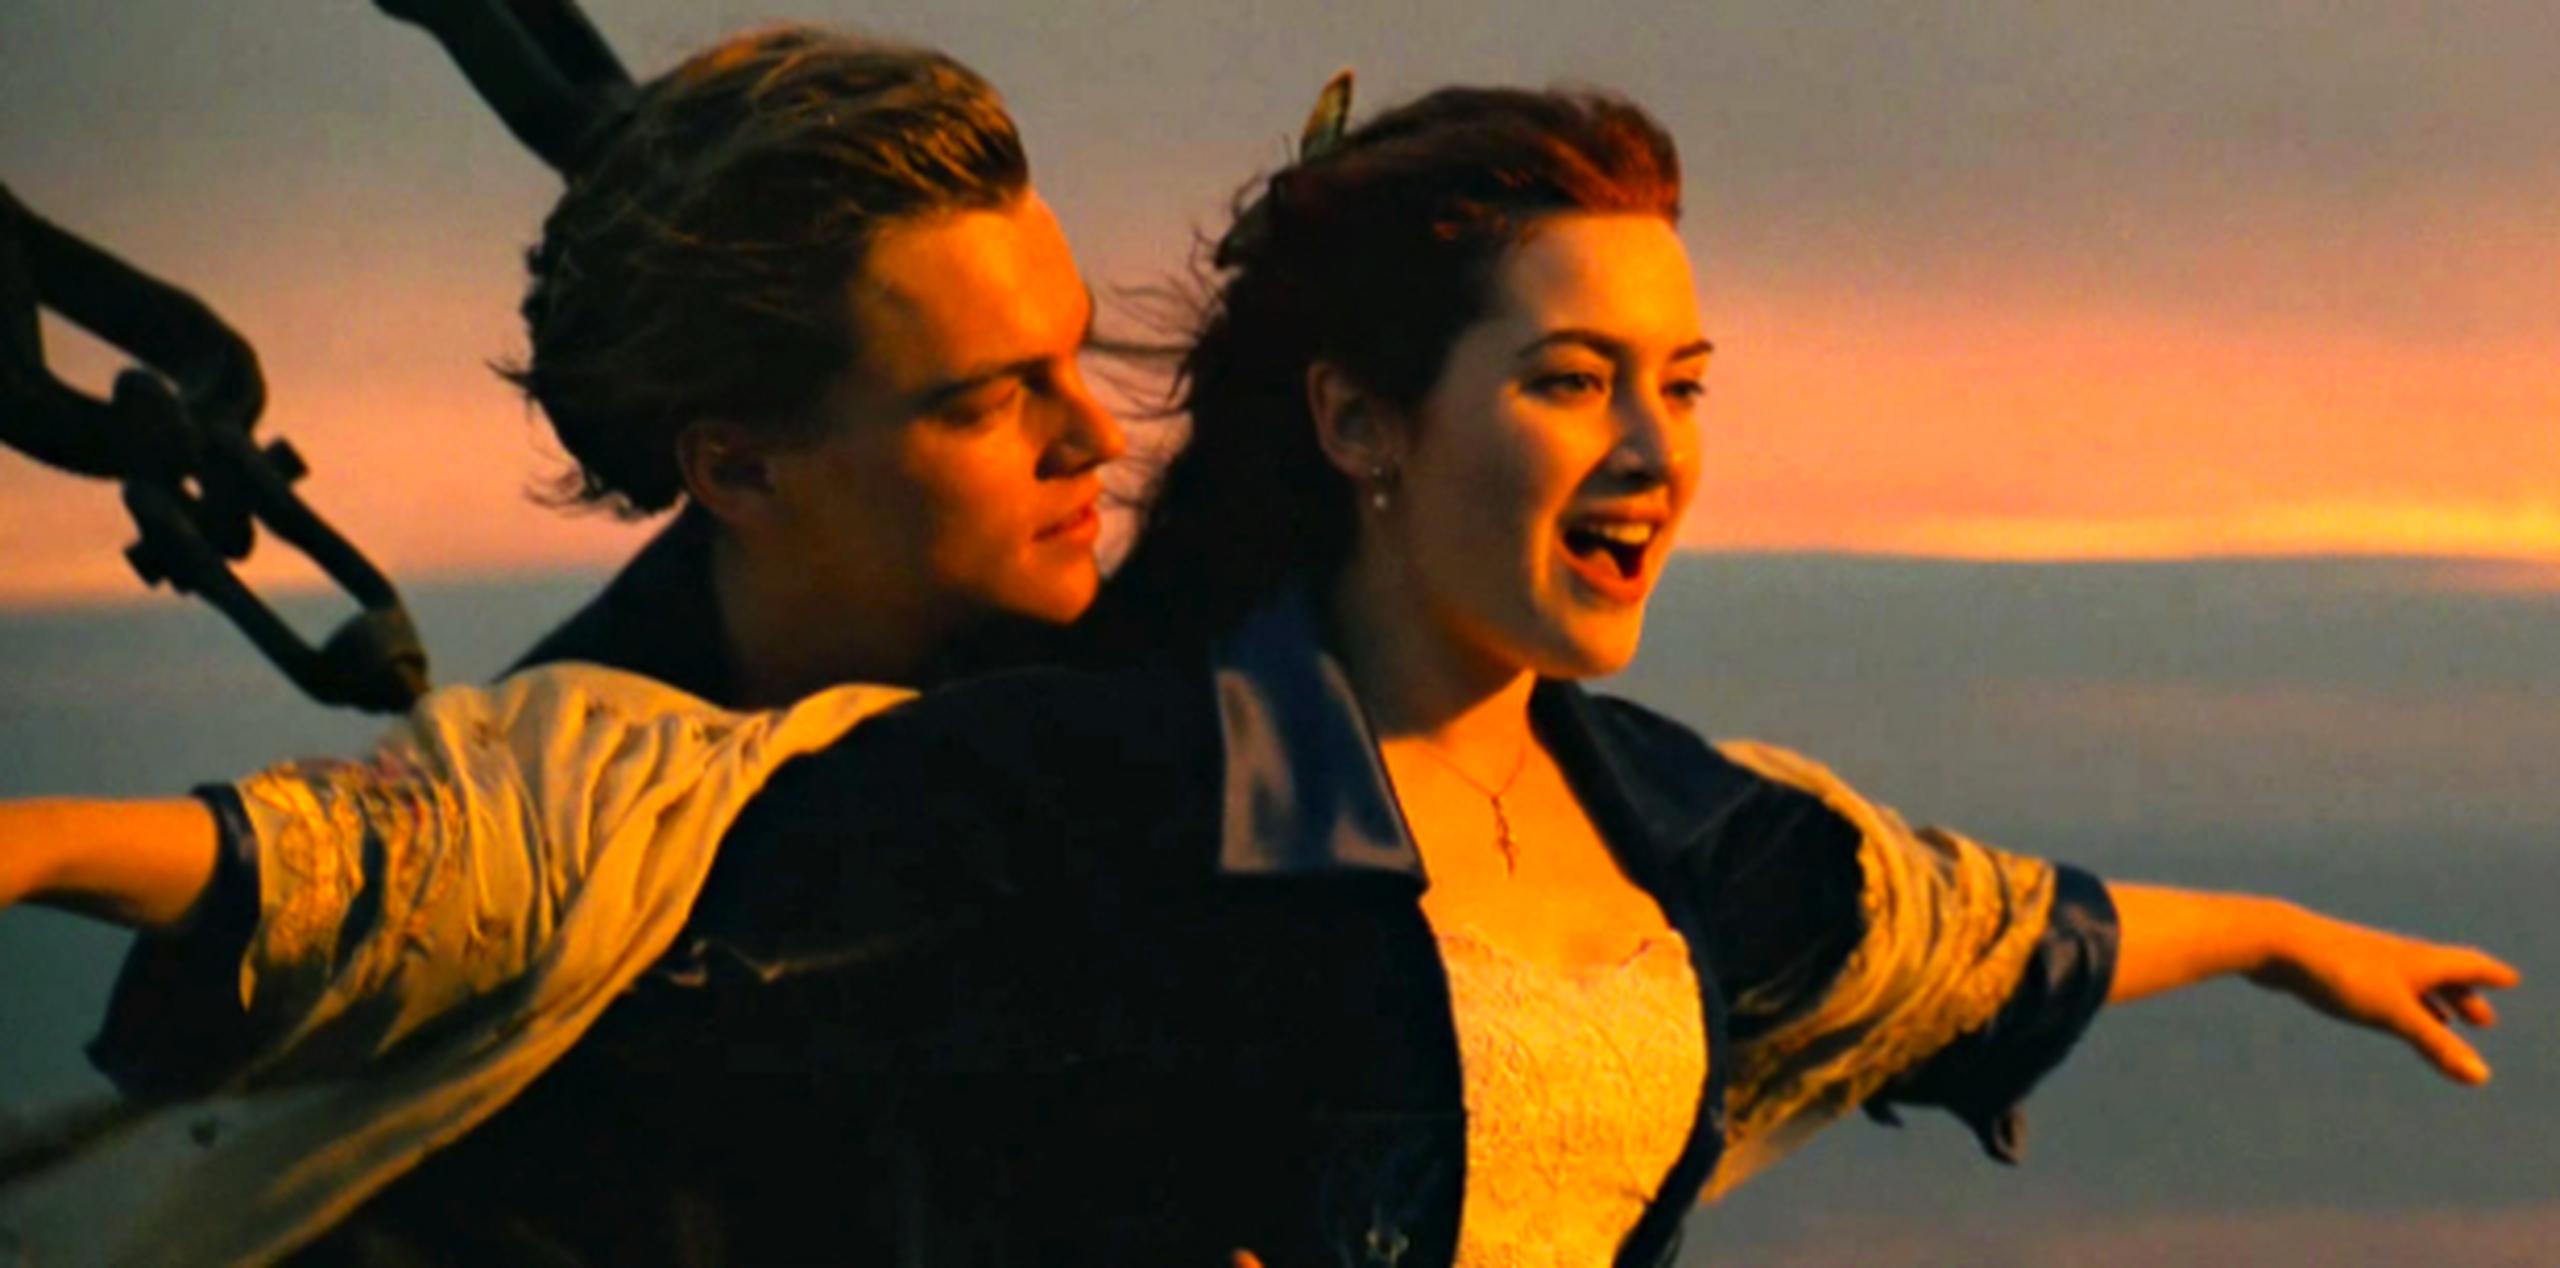 Leonardo DiCaprio como Jack Dawson y Kate Winslet como Rose DeWitt Bukater en "Titanic'. (Paramount Pictures / 20th Century Fox)